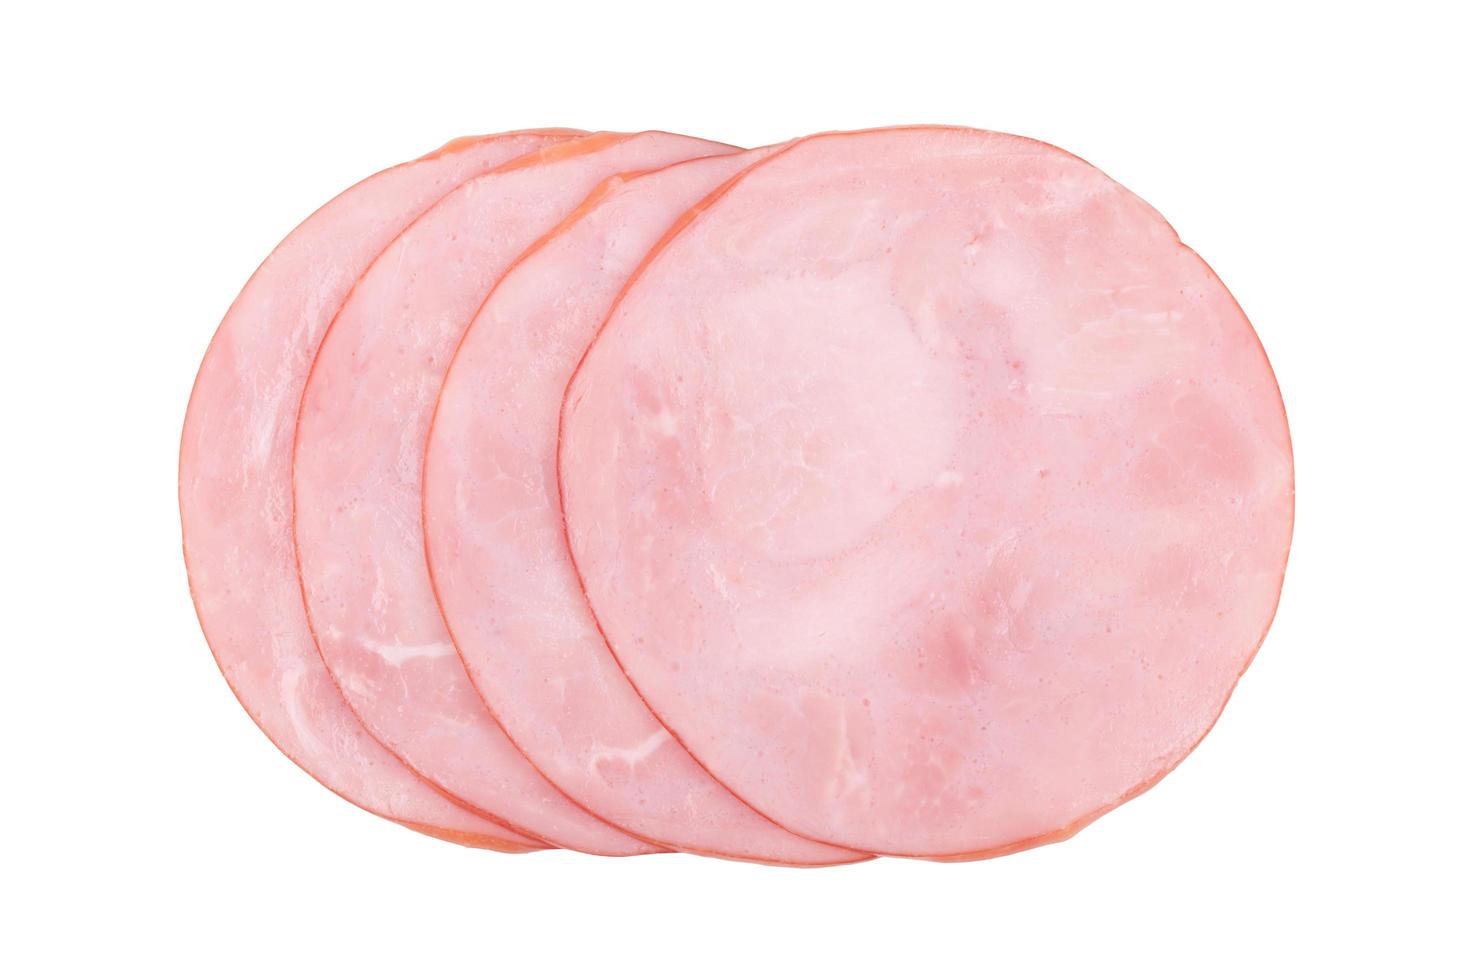 smoked ham isolated on white background photo